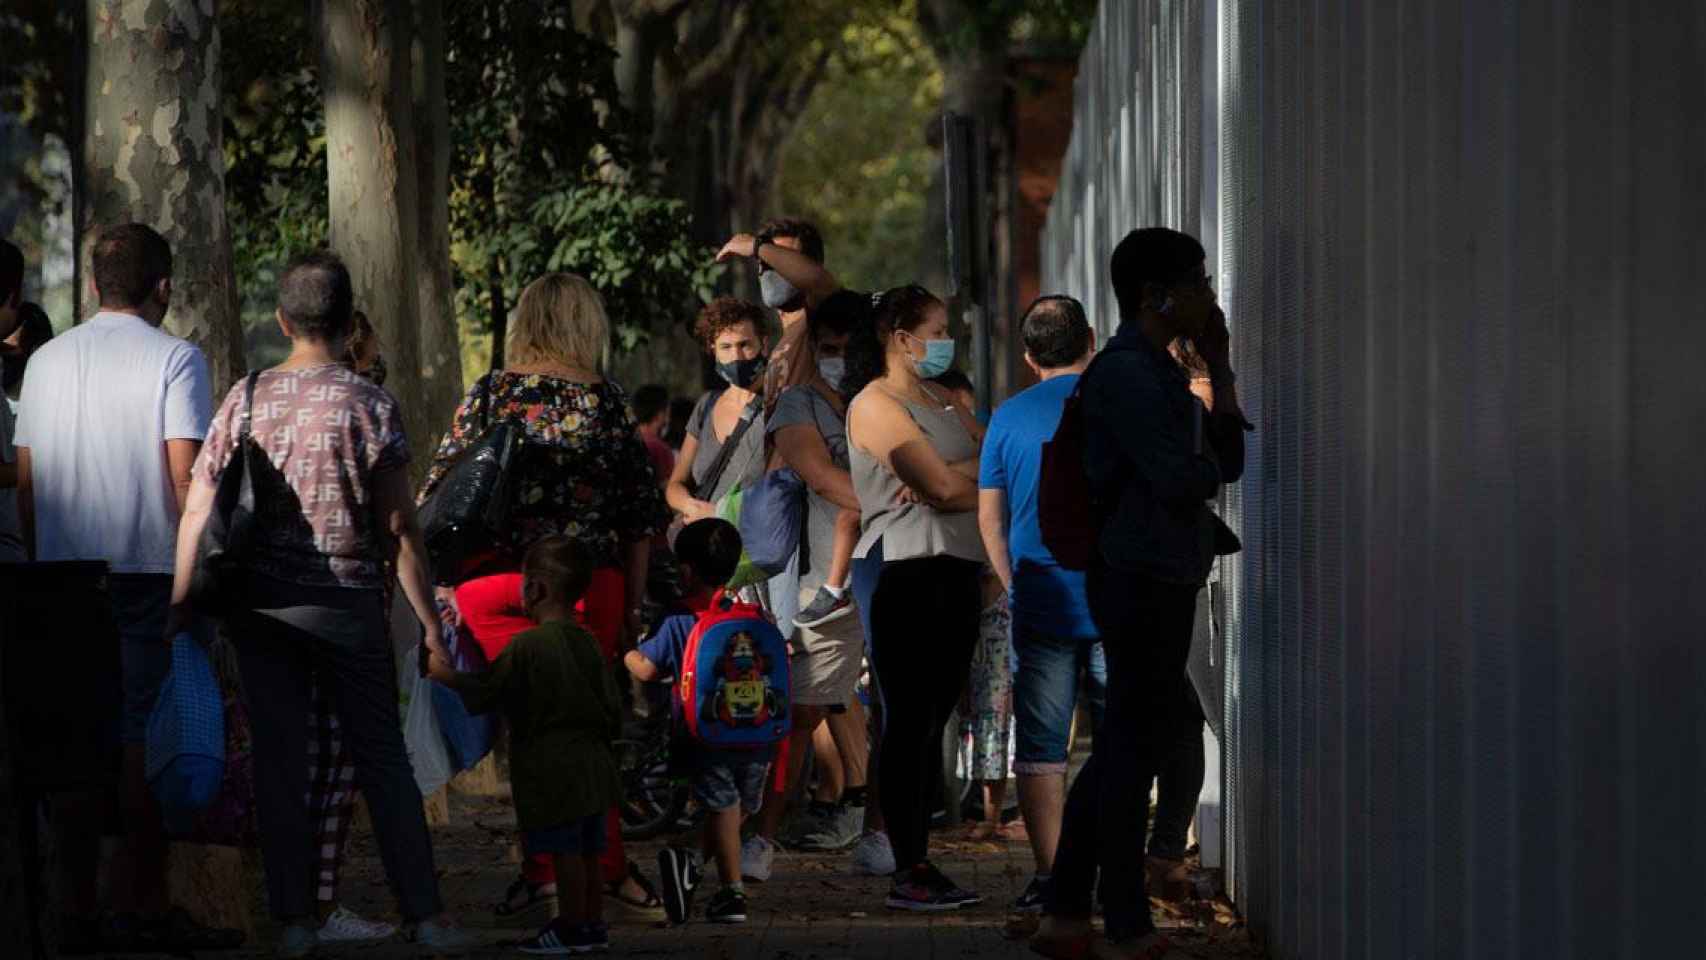 Padres esperan a las puertas de un colegio para dejar a sus hijos en las aulas / DAVID ZORRAKINO-EUROPAPRESS